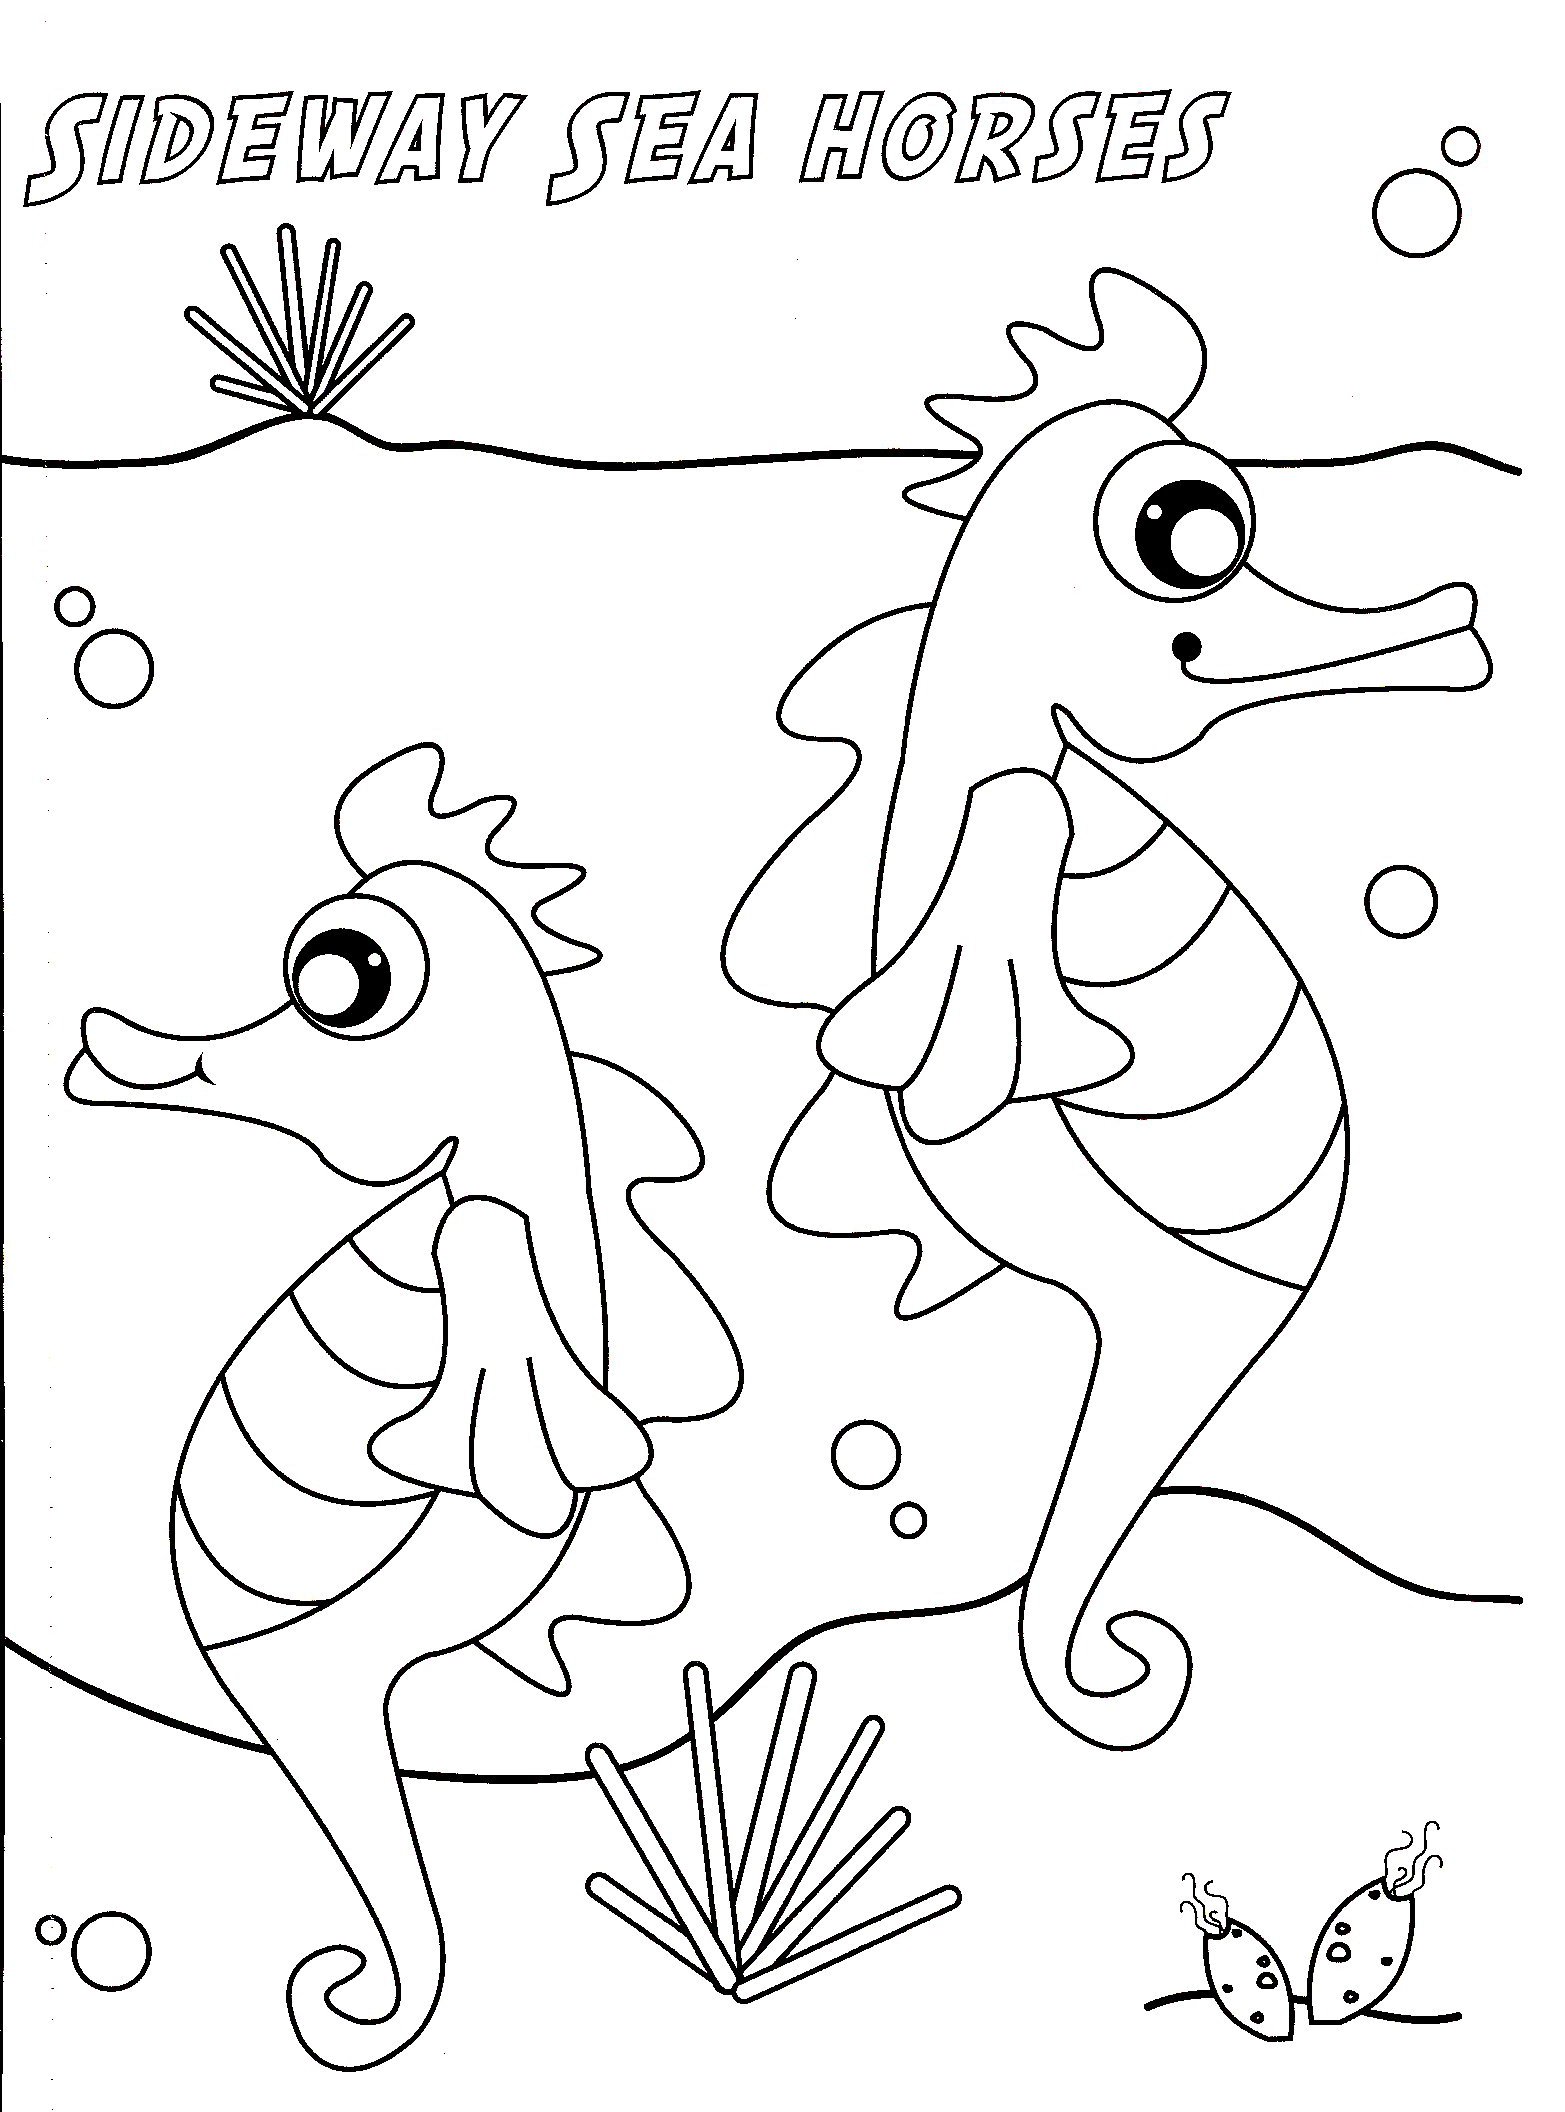 Vista laterale di due cavallucci marini da colorare